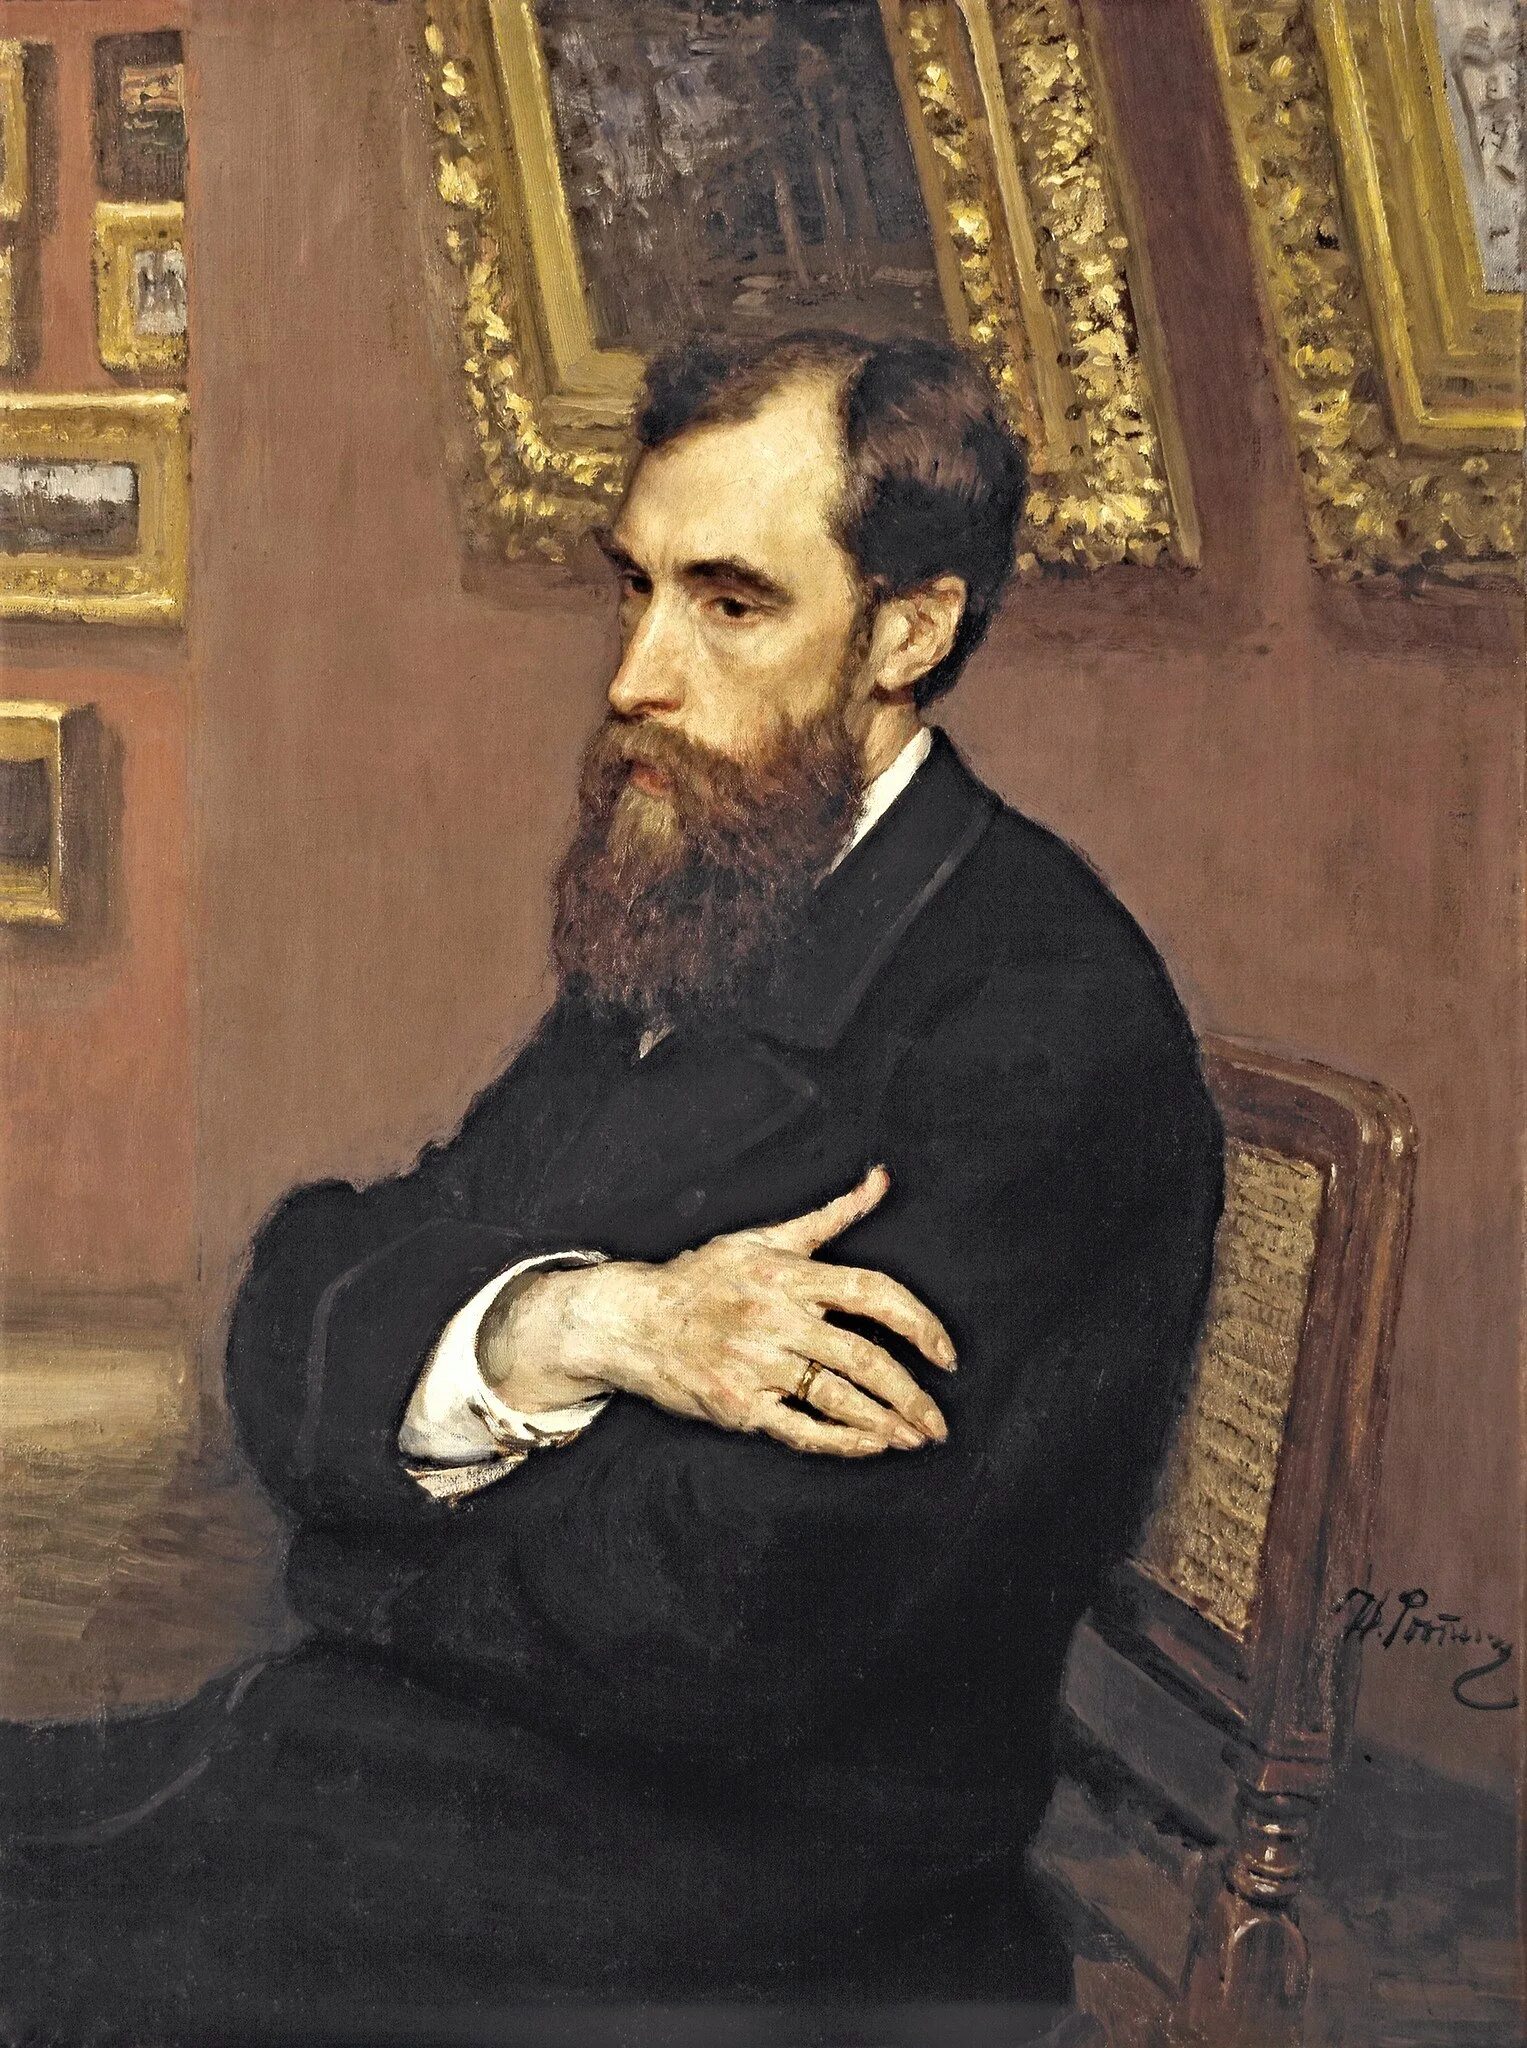 Репин портрет Третьякова. Писатели и художники 19 века